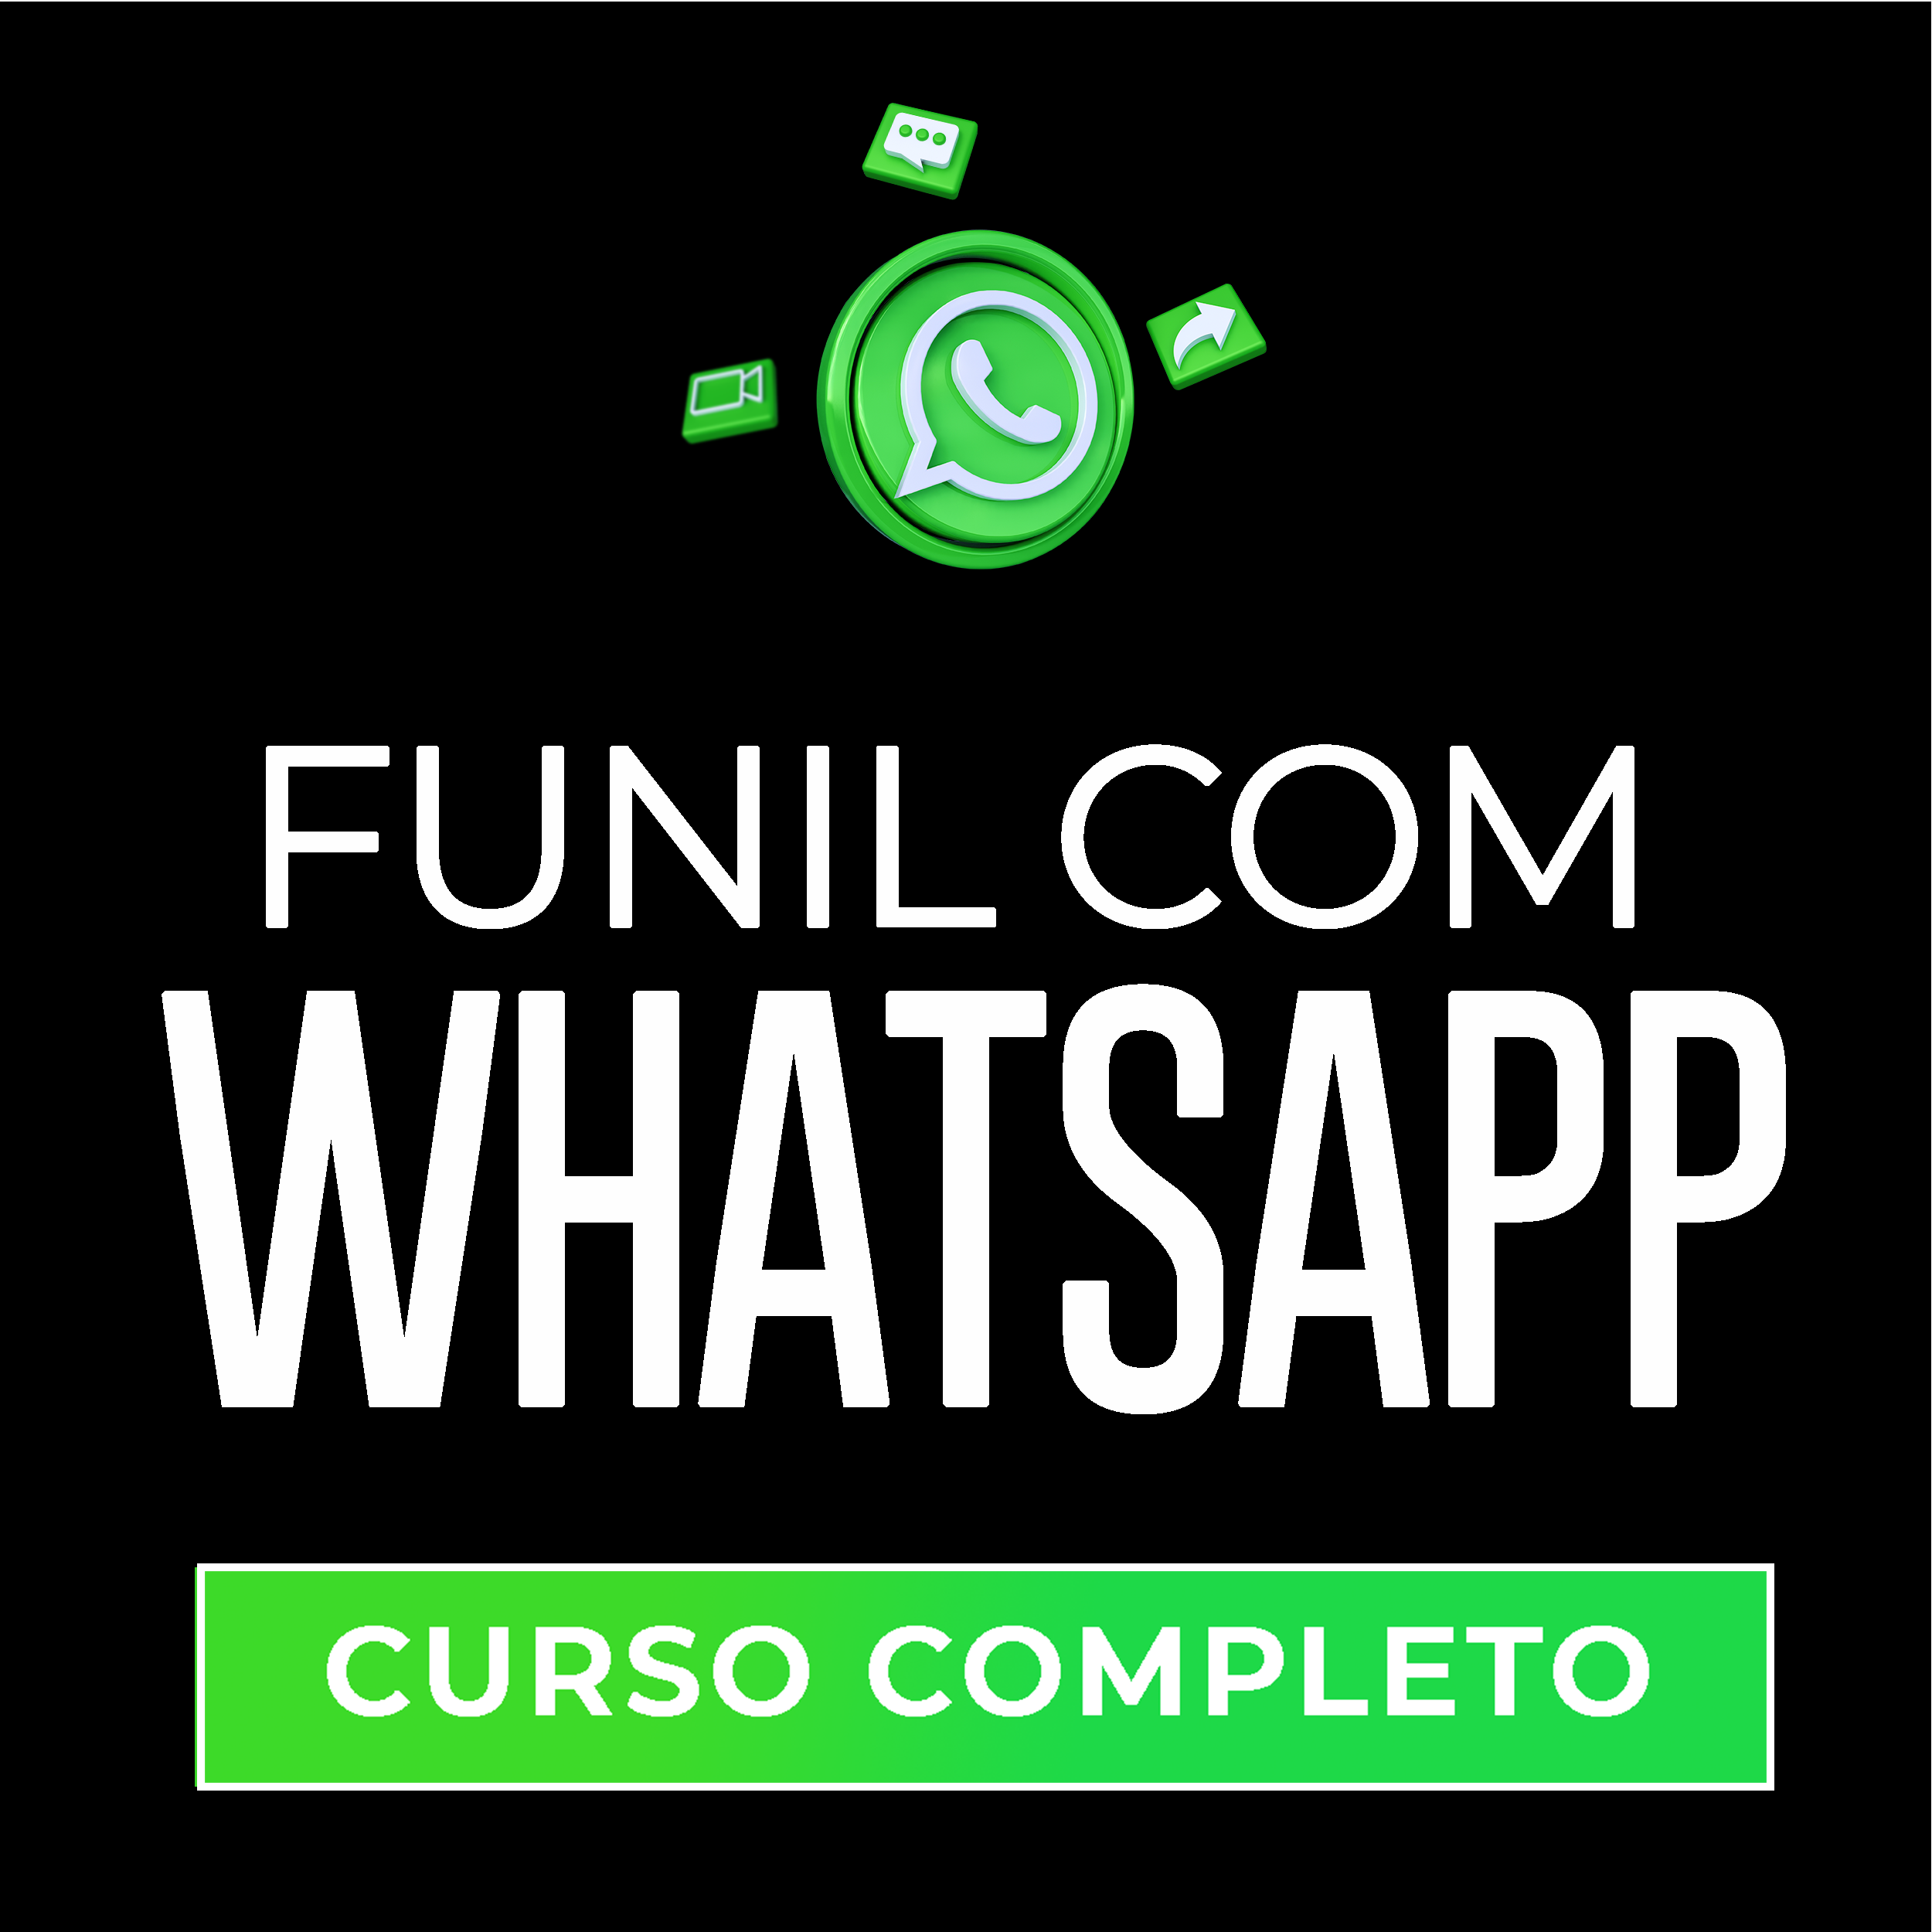 Curso Completo - Funil Com Whatsapp: Como Transformar Grupos em Lucro (Todos os Dias) 83